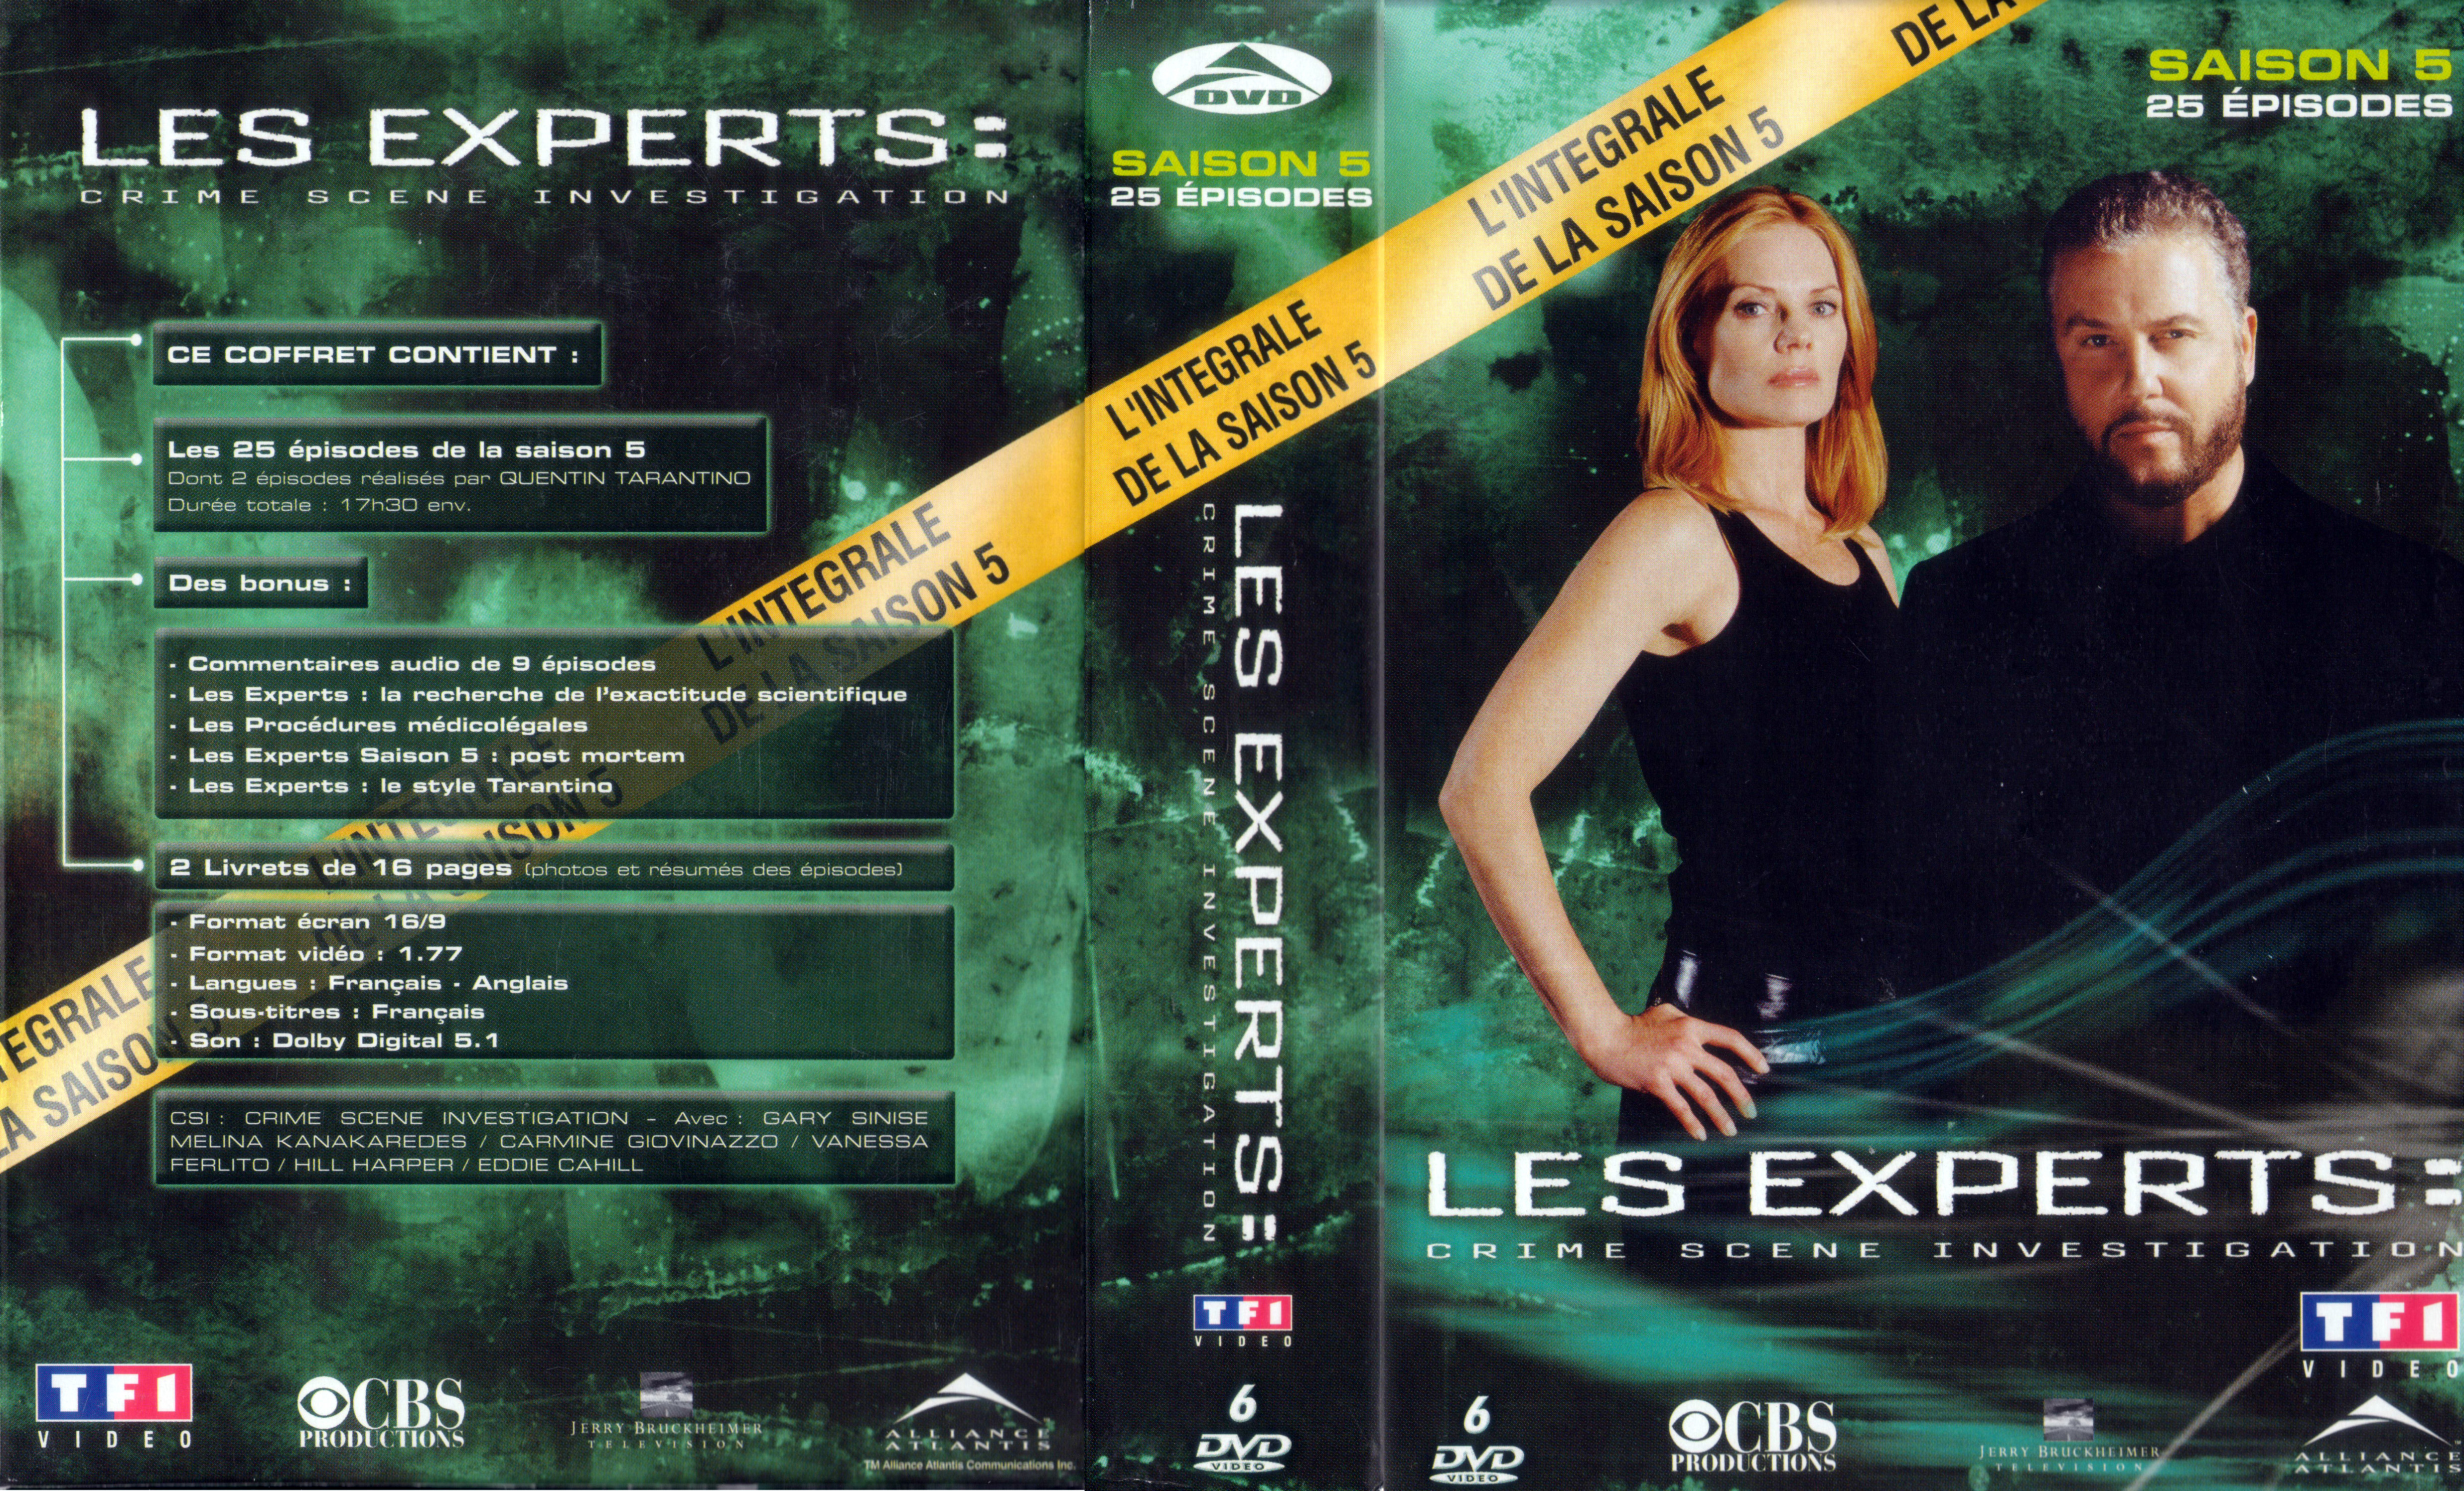 Jaquette DVD Les experts saison 5 COFFRET